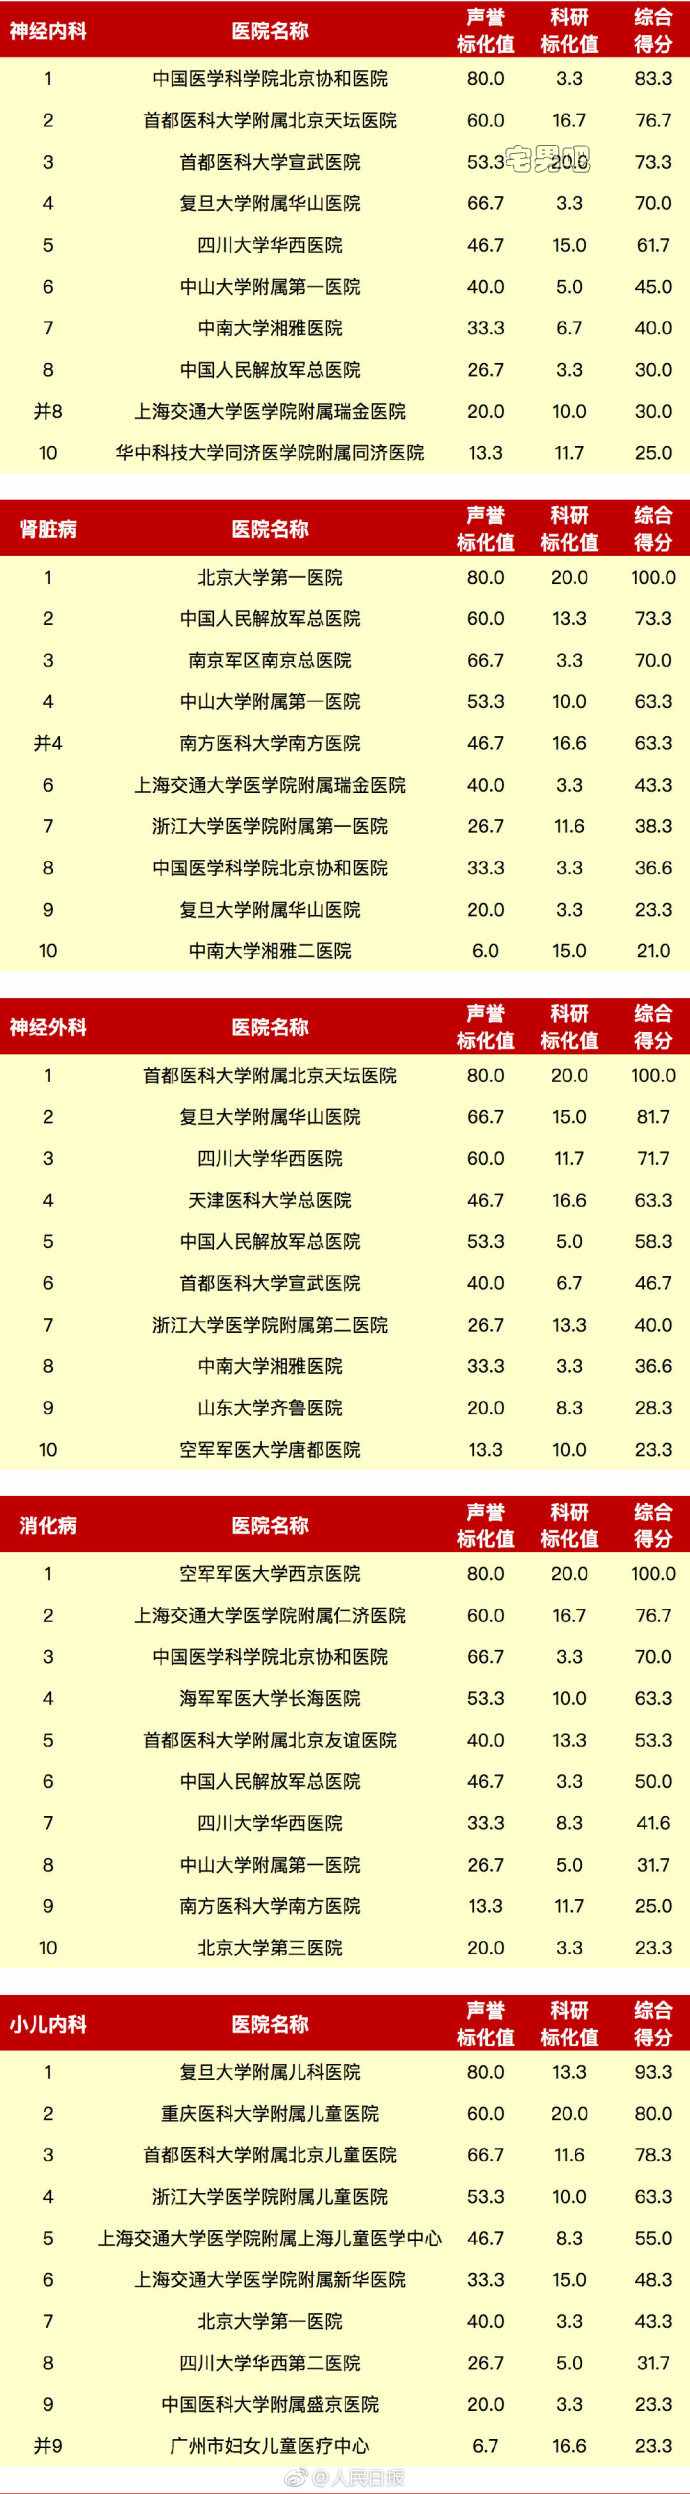 中国医院排行榜 2017年度全国医院排行榜 